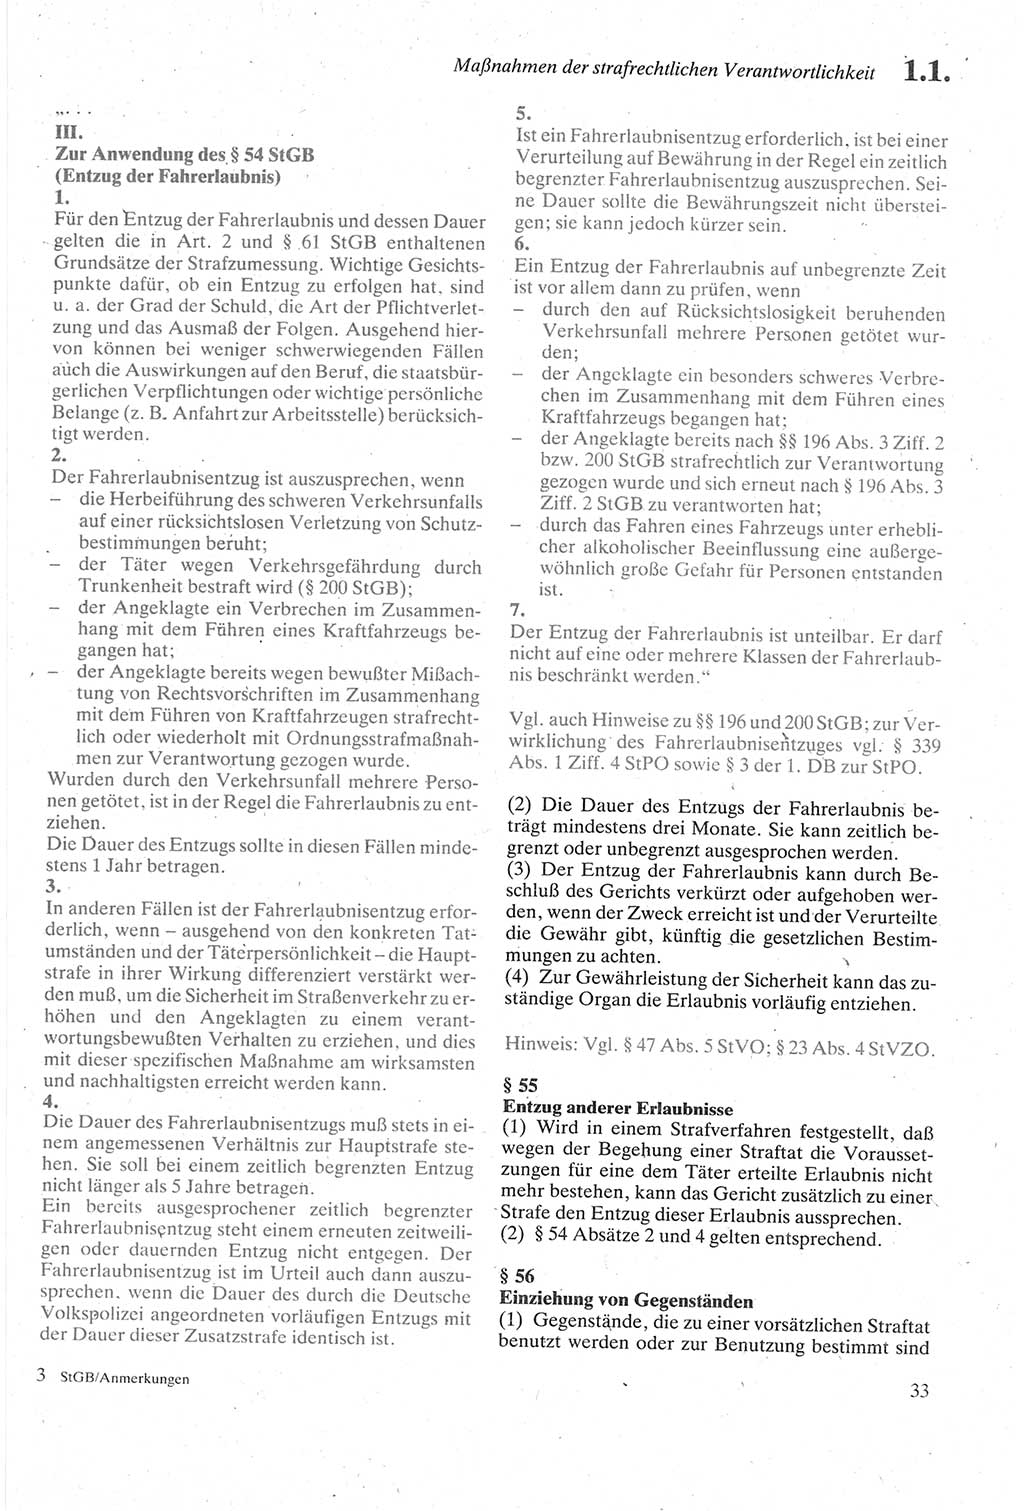 Strafgesetzbuch (StGB) der Deutschen Demokratischen Republik (DDR) sowie angrenzende Gesetze und Bestimmungen 1979, Seite 33 (StGB DDR Ges. Best. 1979, S. 33)